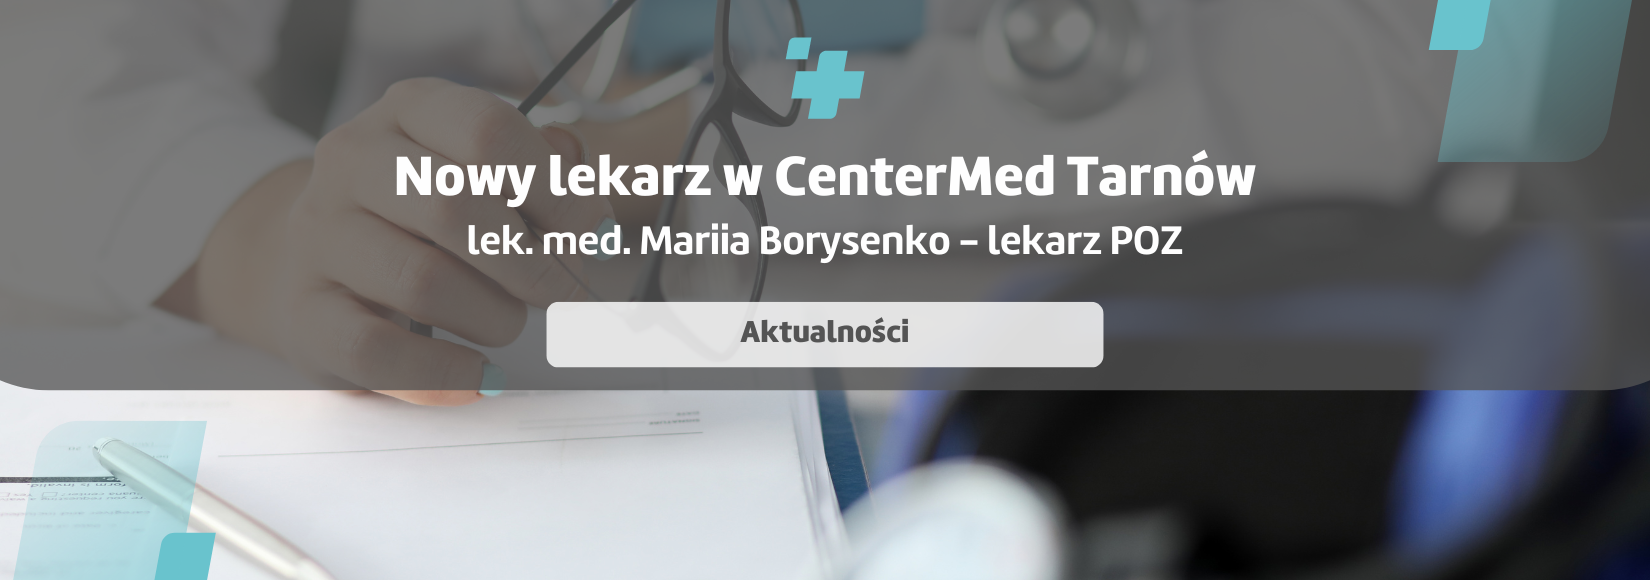 Nowy lekarz POZ w CenterMed Szkotnik - lek. med. Mariia Borysenko